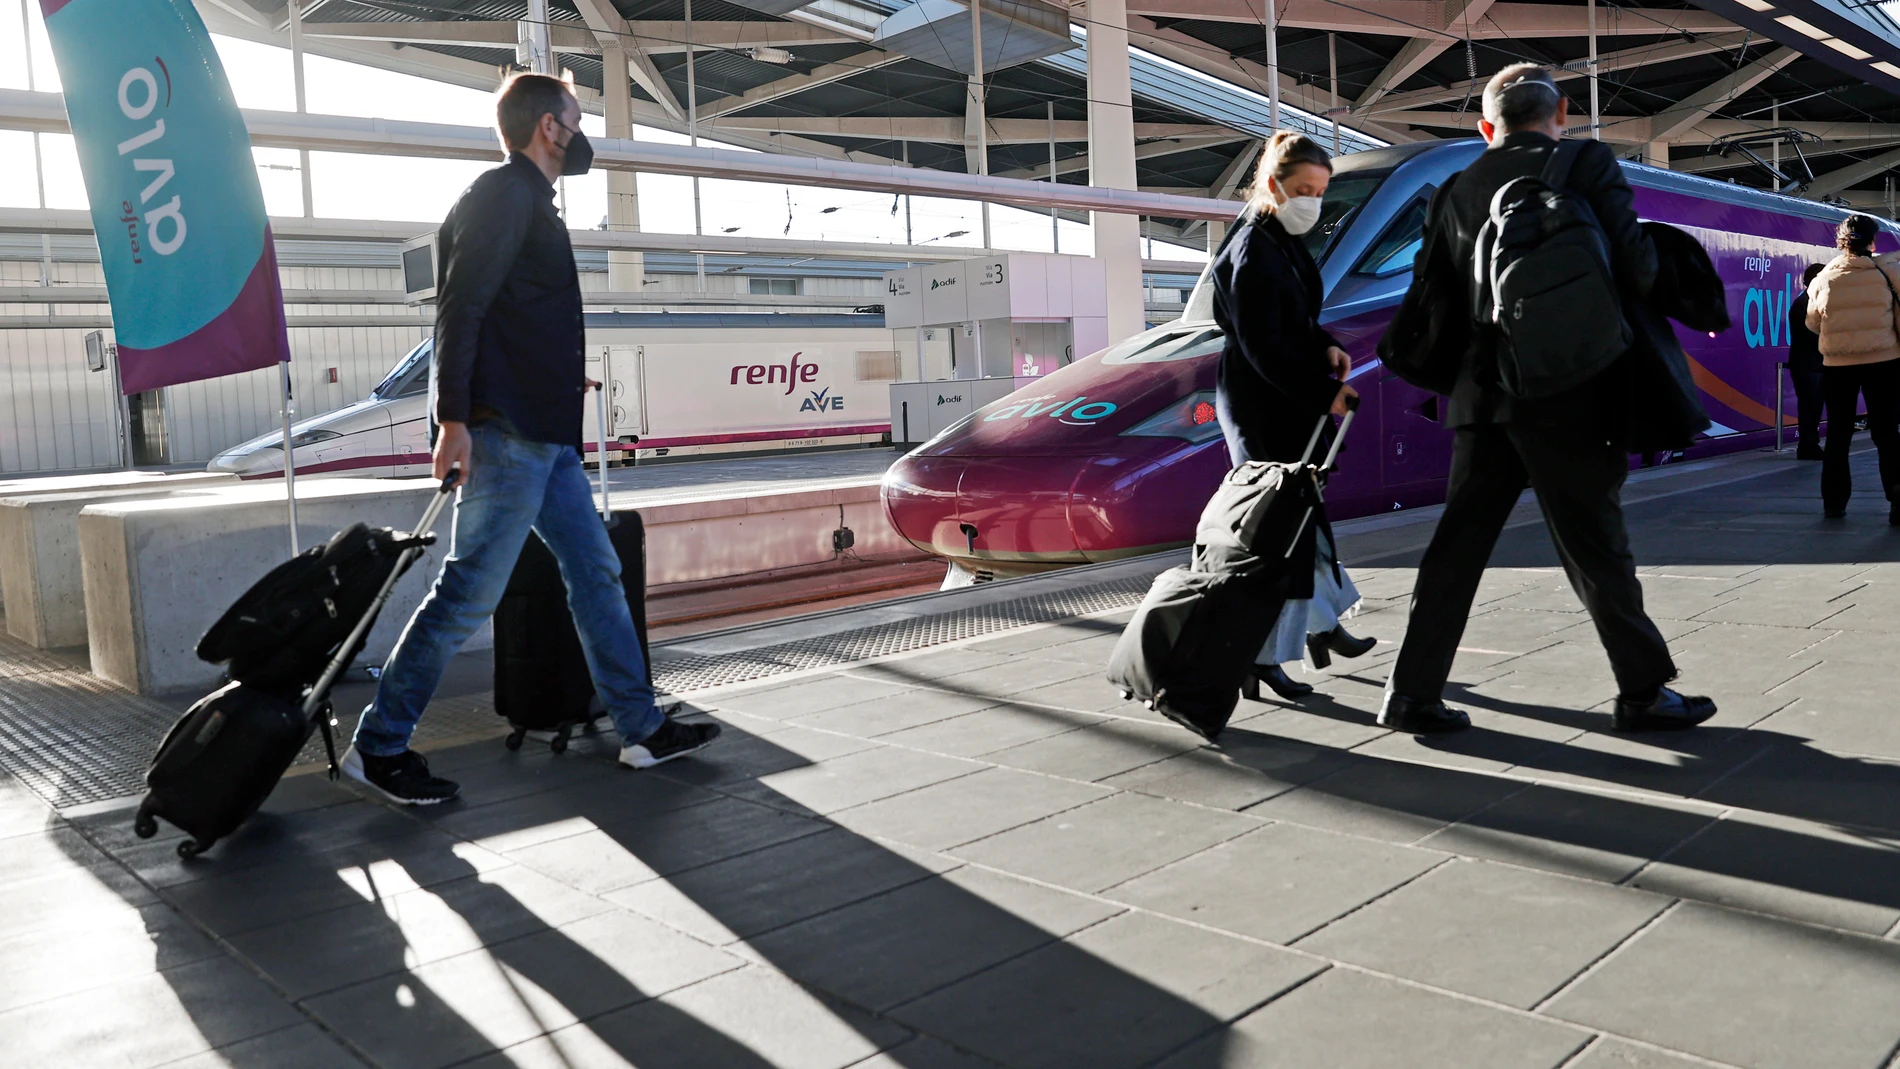 Varios pasajeros se dirigen al primer tren Avlo, el servicio de alta velocidad de bajo coste de Renfe, que inicia sus operaciones entre València y Madrid con 100.000 billetes ya vendidos